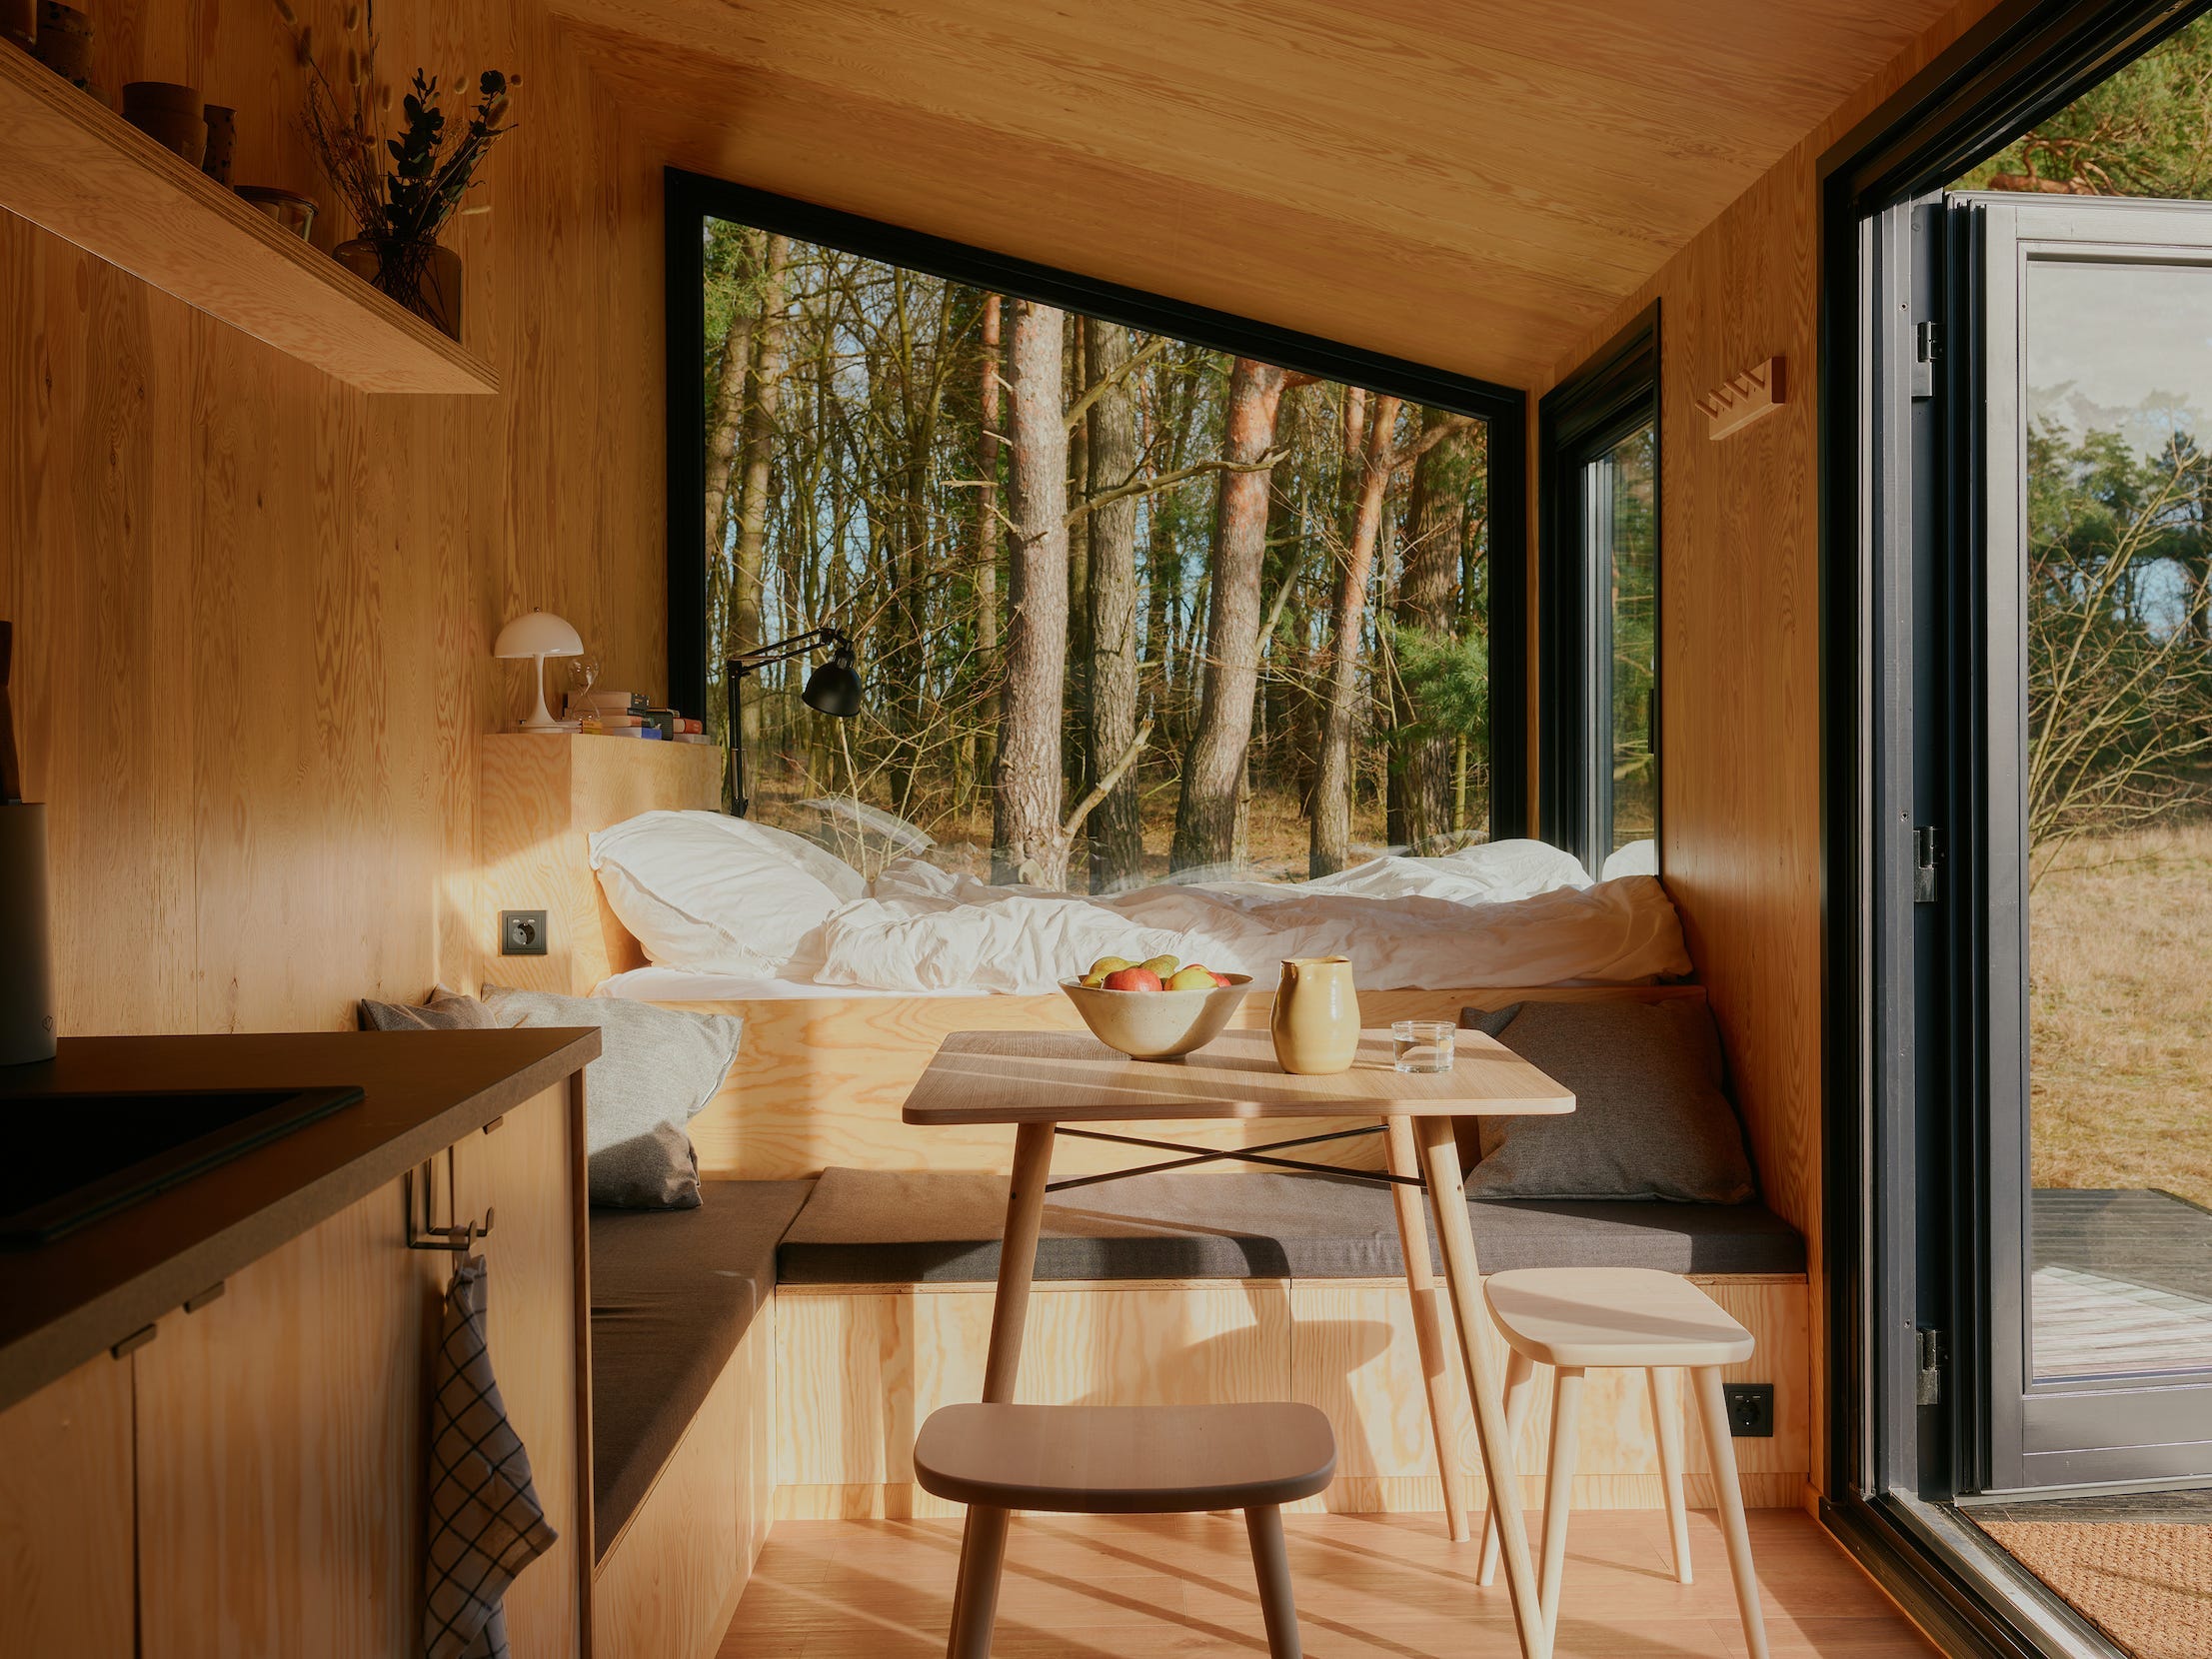 Een bed, keuken, tafel met stoelen en ramen met zicht op de natuur.